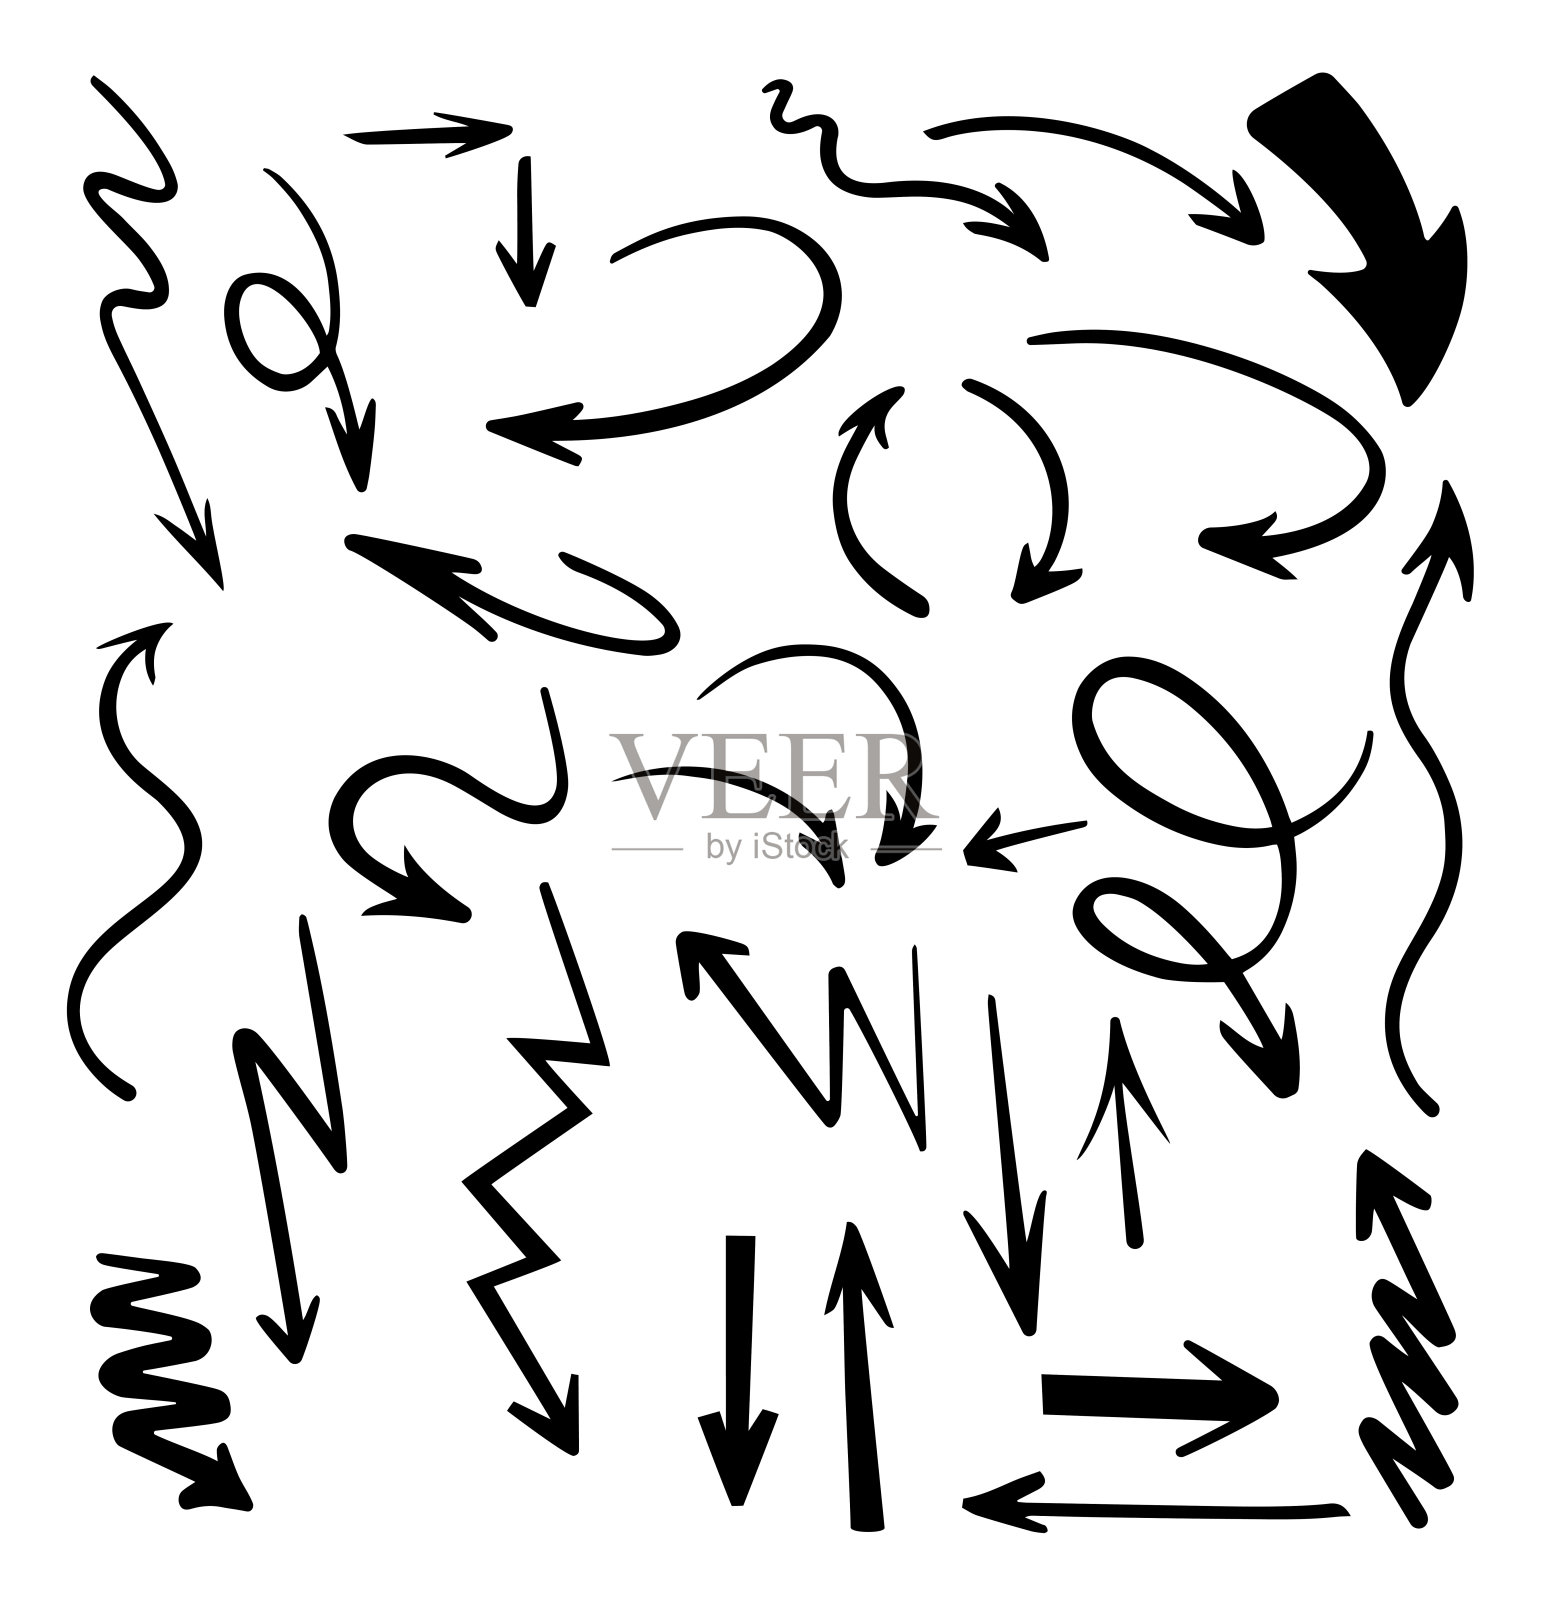 向量抽象黑色手绘箭头集。插图的Grunge素描手工矢量箭头集。箭头枯燥乏味的向量。设计元素图片